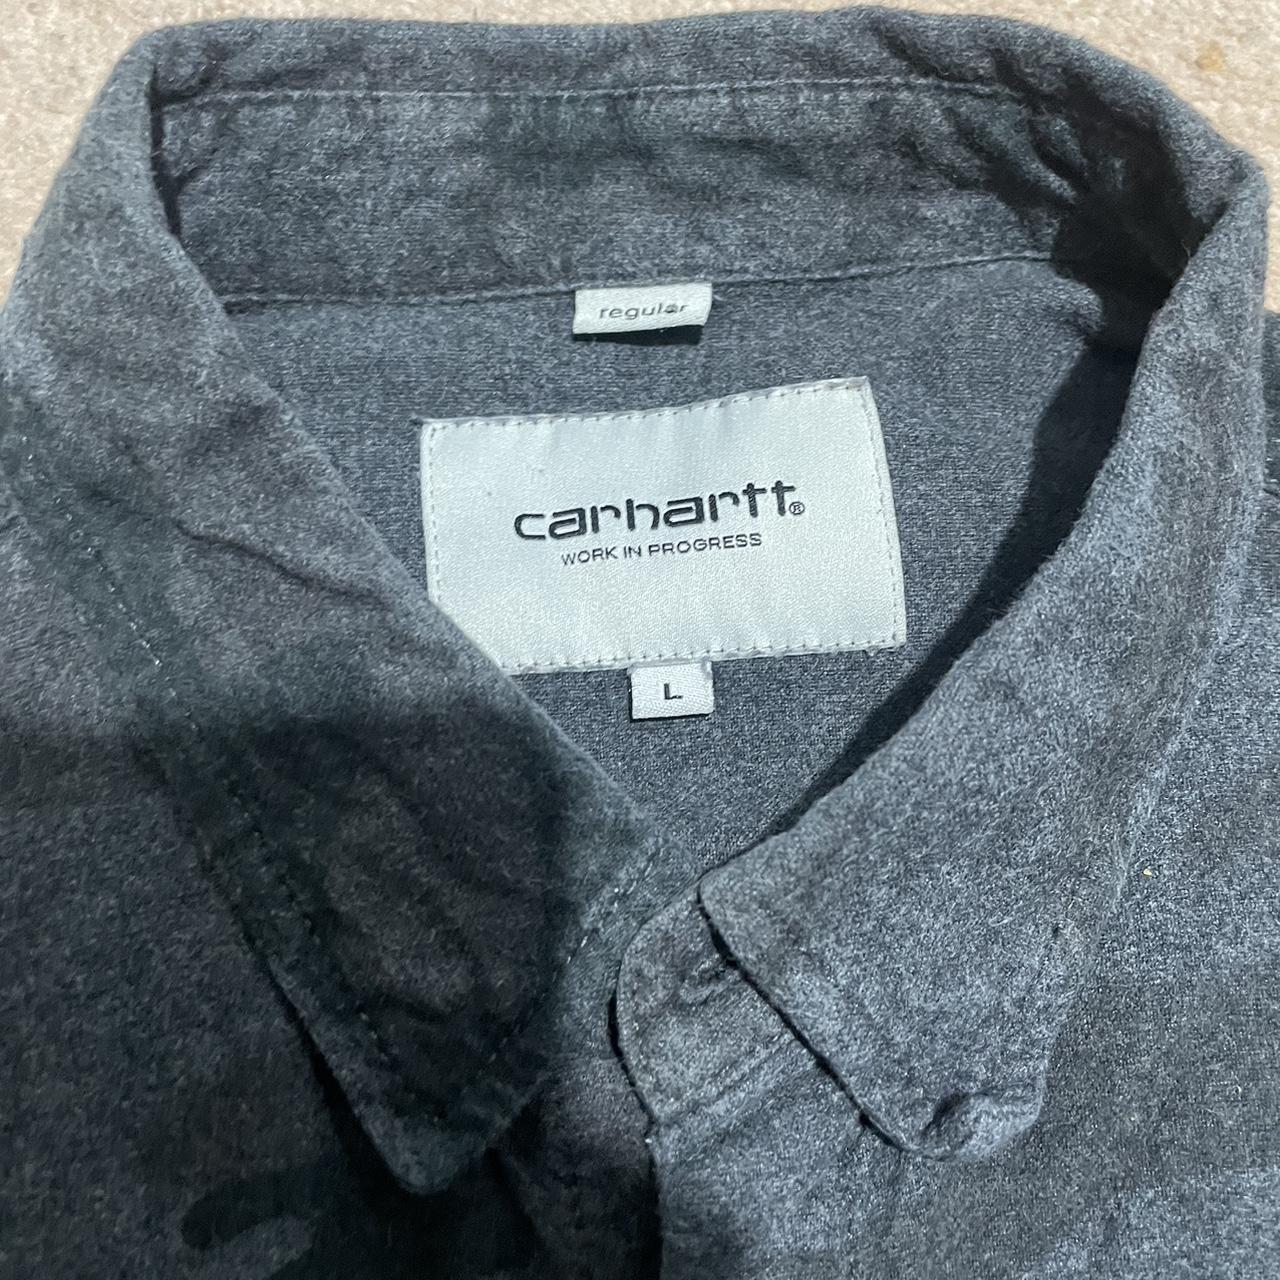 Camo carhartt shirt ⚡️unreal design ⚡️super... - Depop